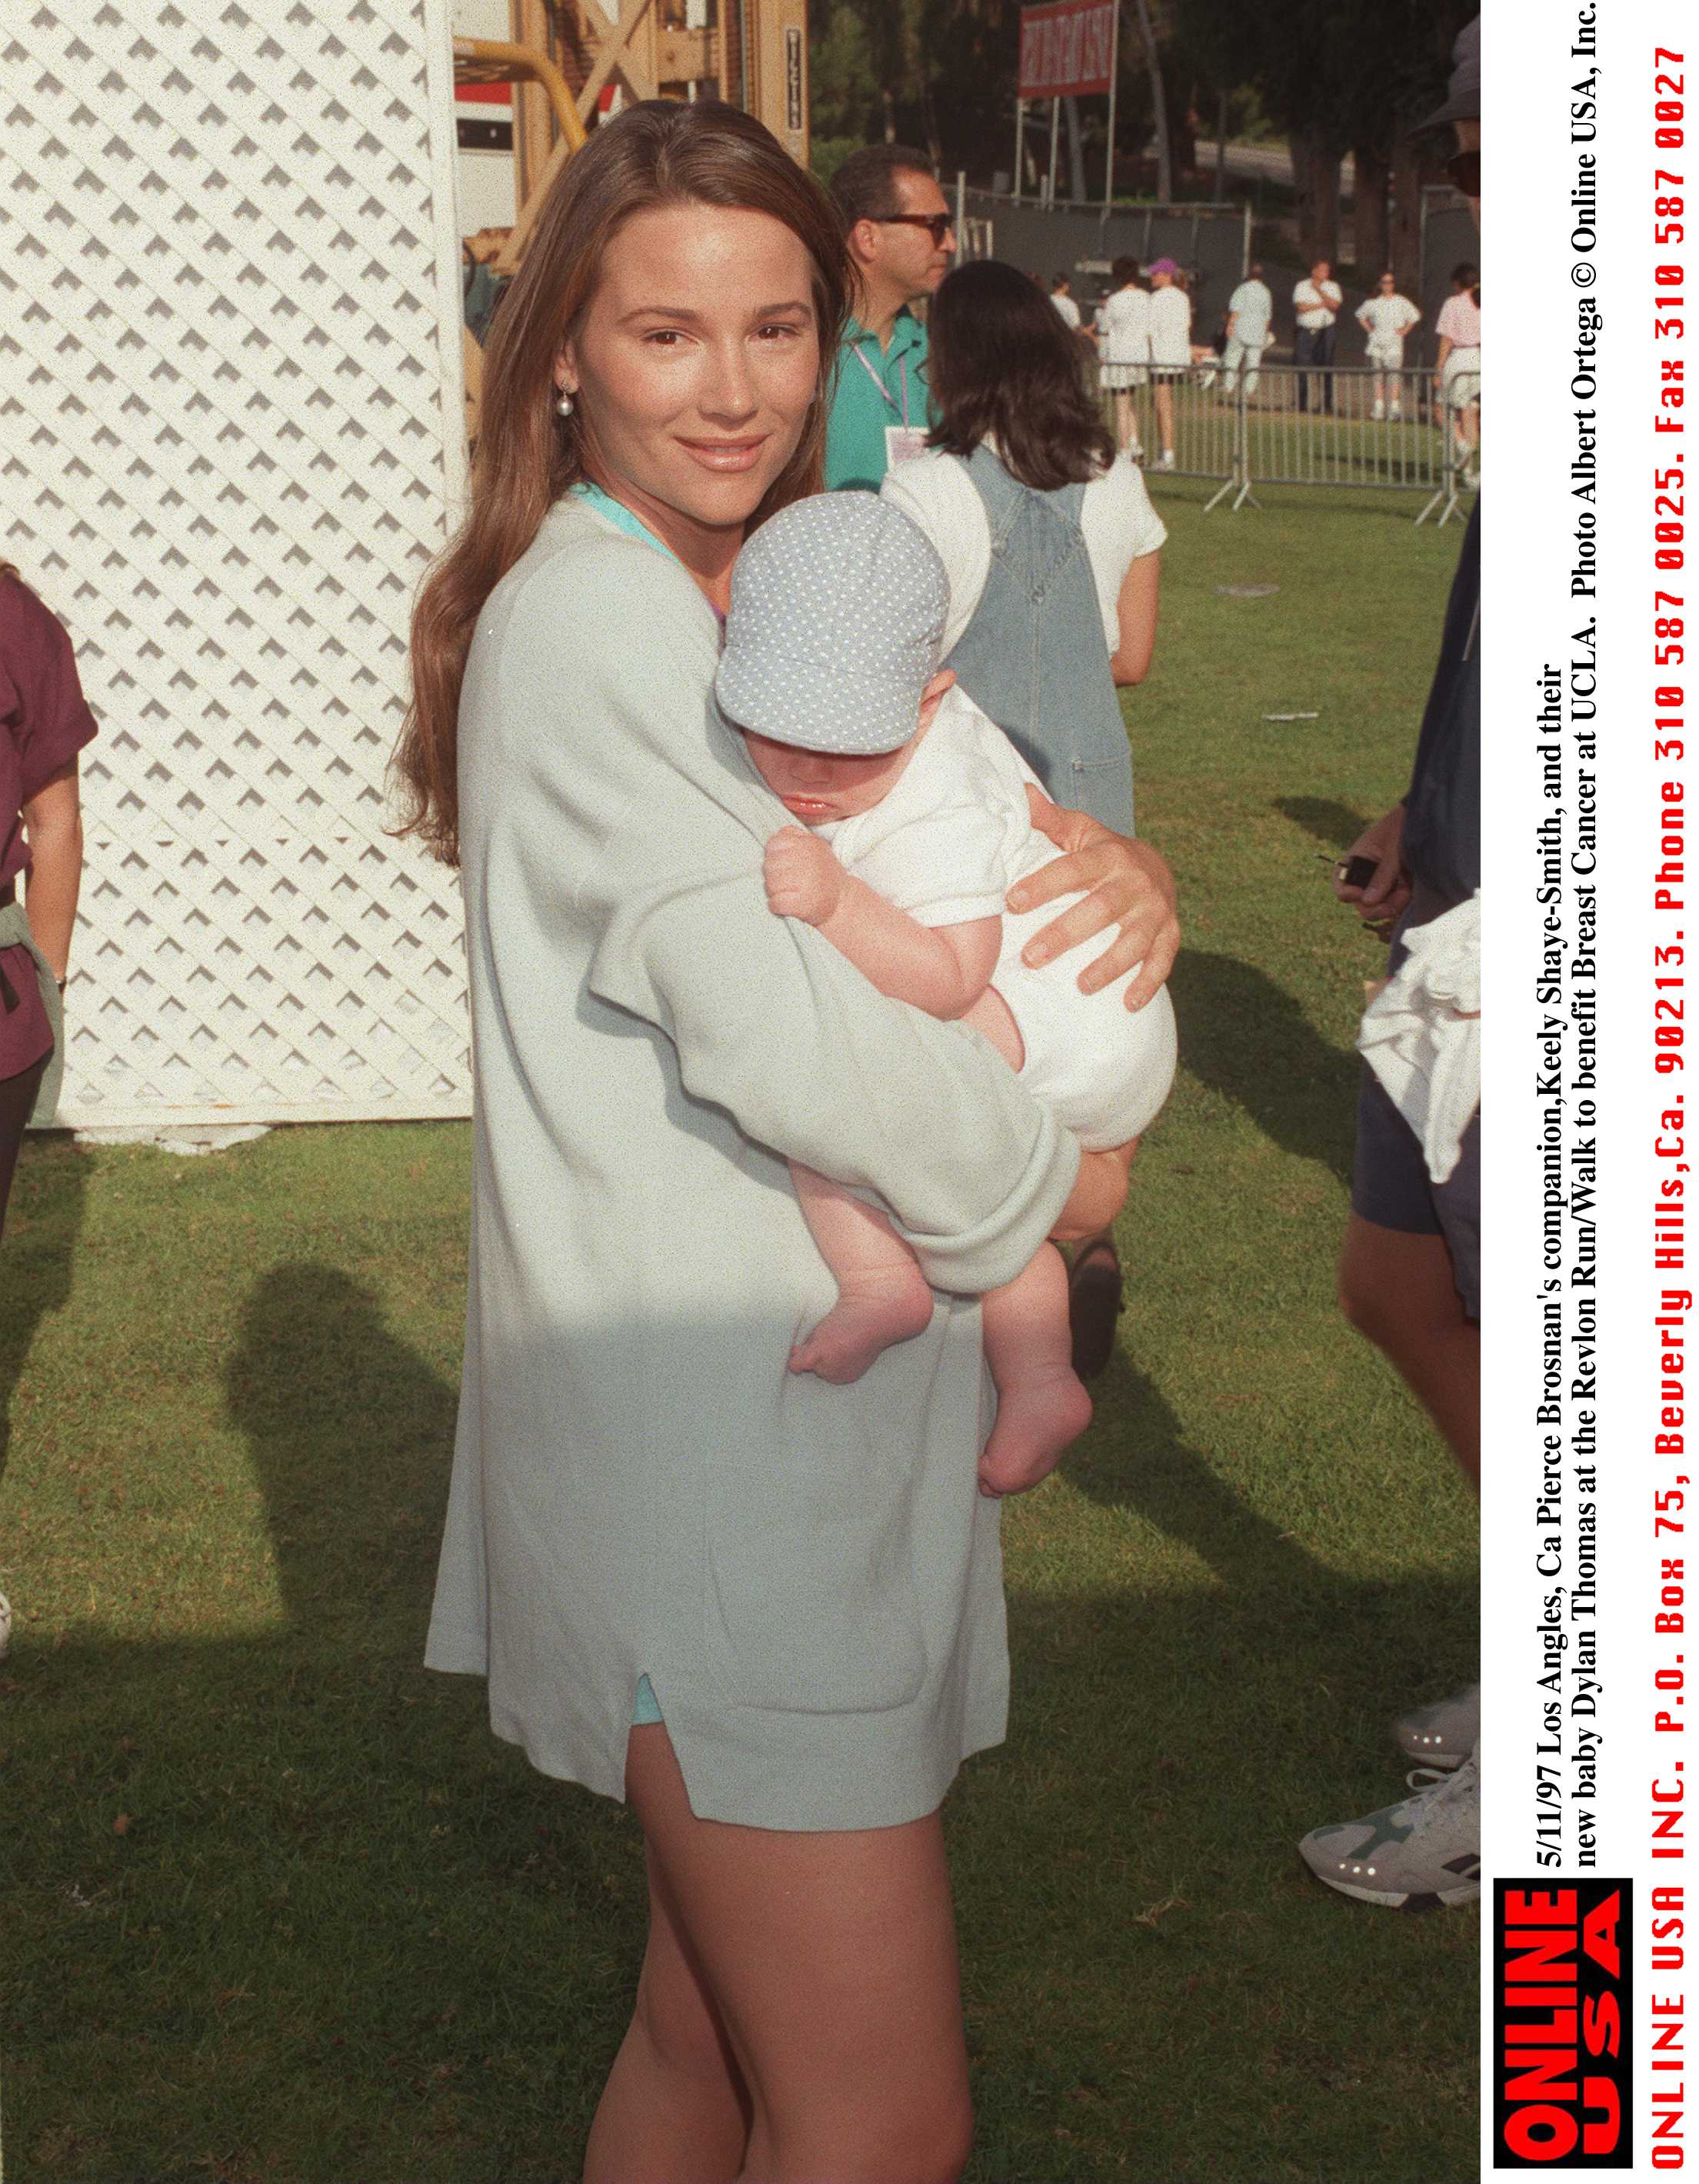 Die Dame und ihr Sohn beim Revlon Run/Walk zu Gunsten von Brustkrebs an der UCLA am 12. März 1997 | Quelle: Getty Images